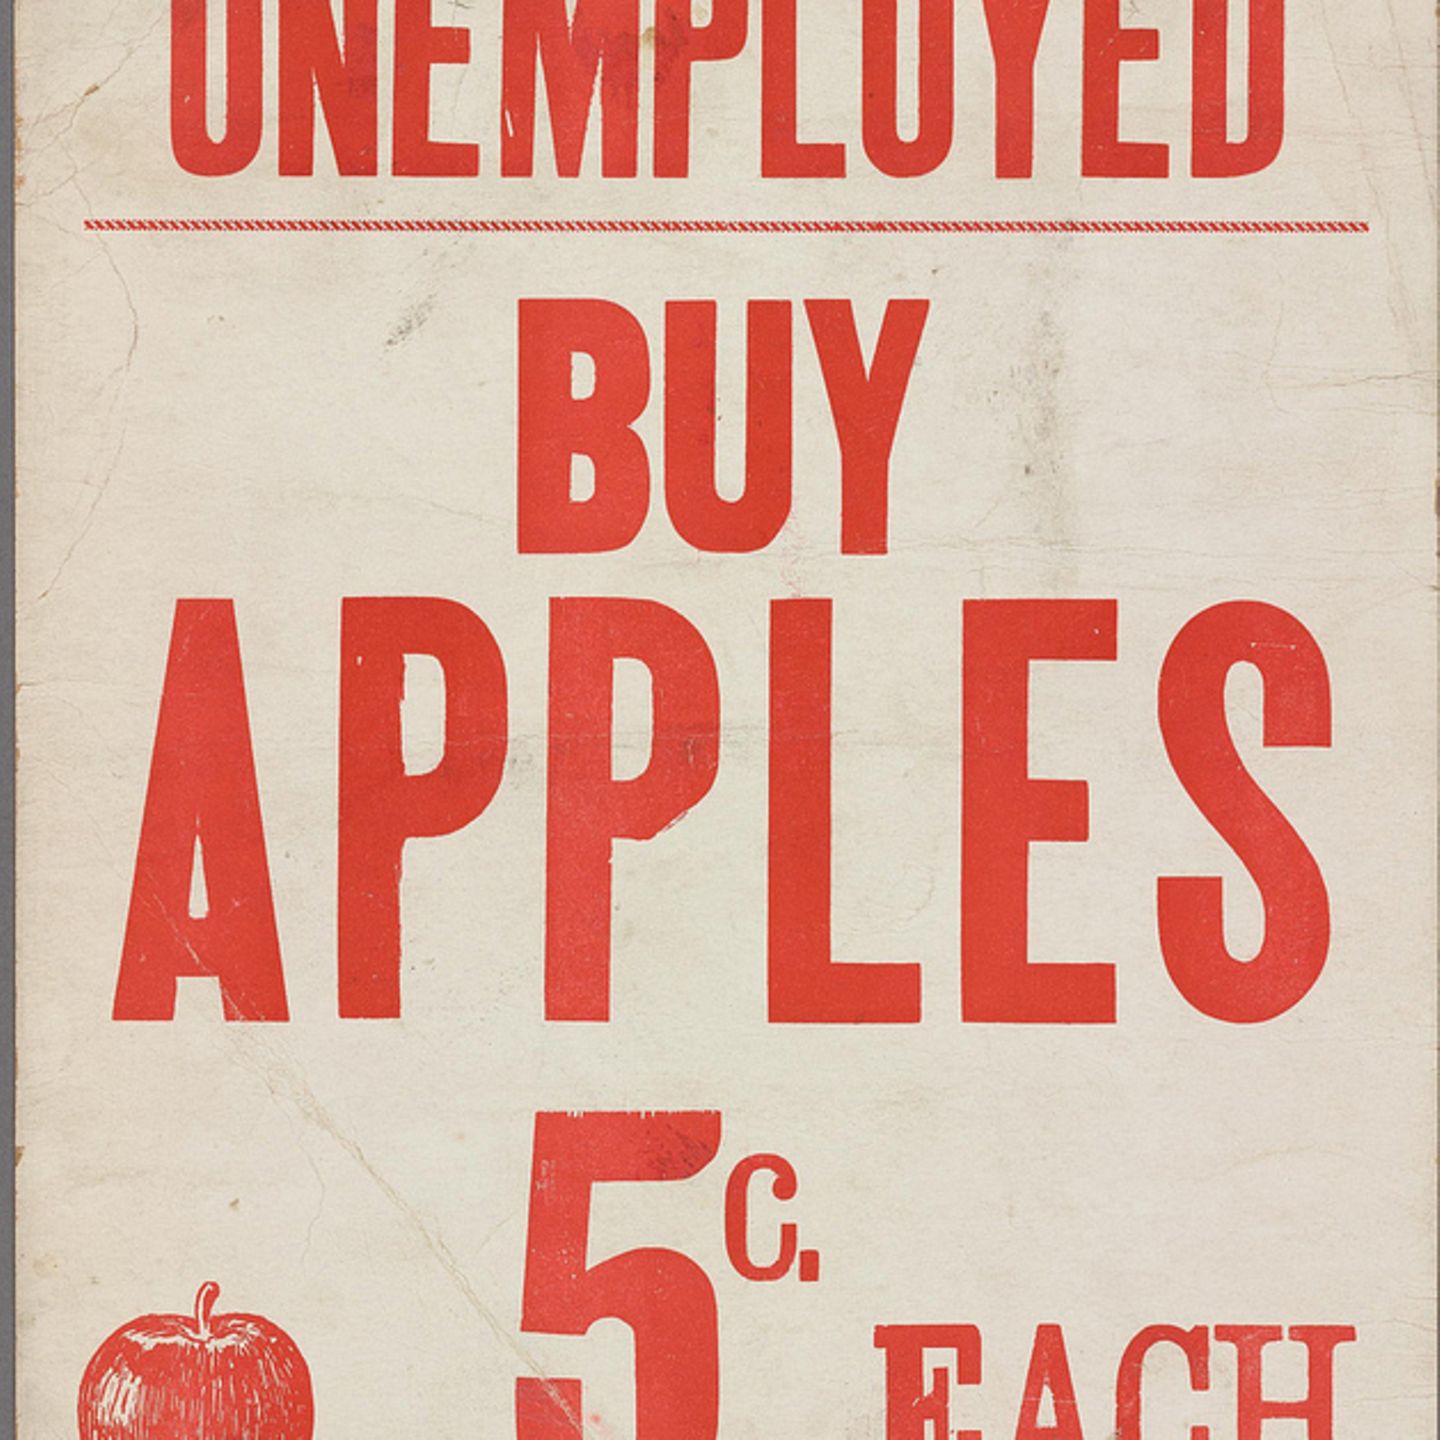 Werbeschild der Großen Depression 1930